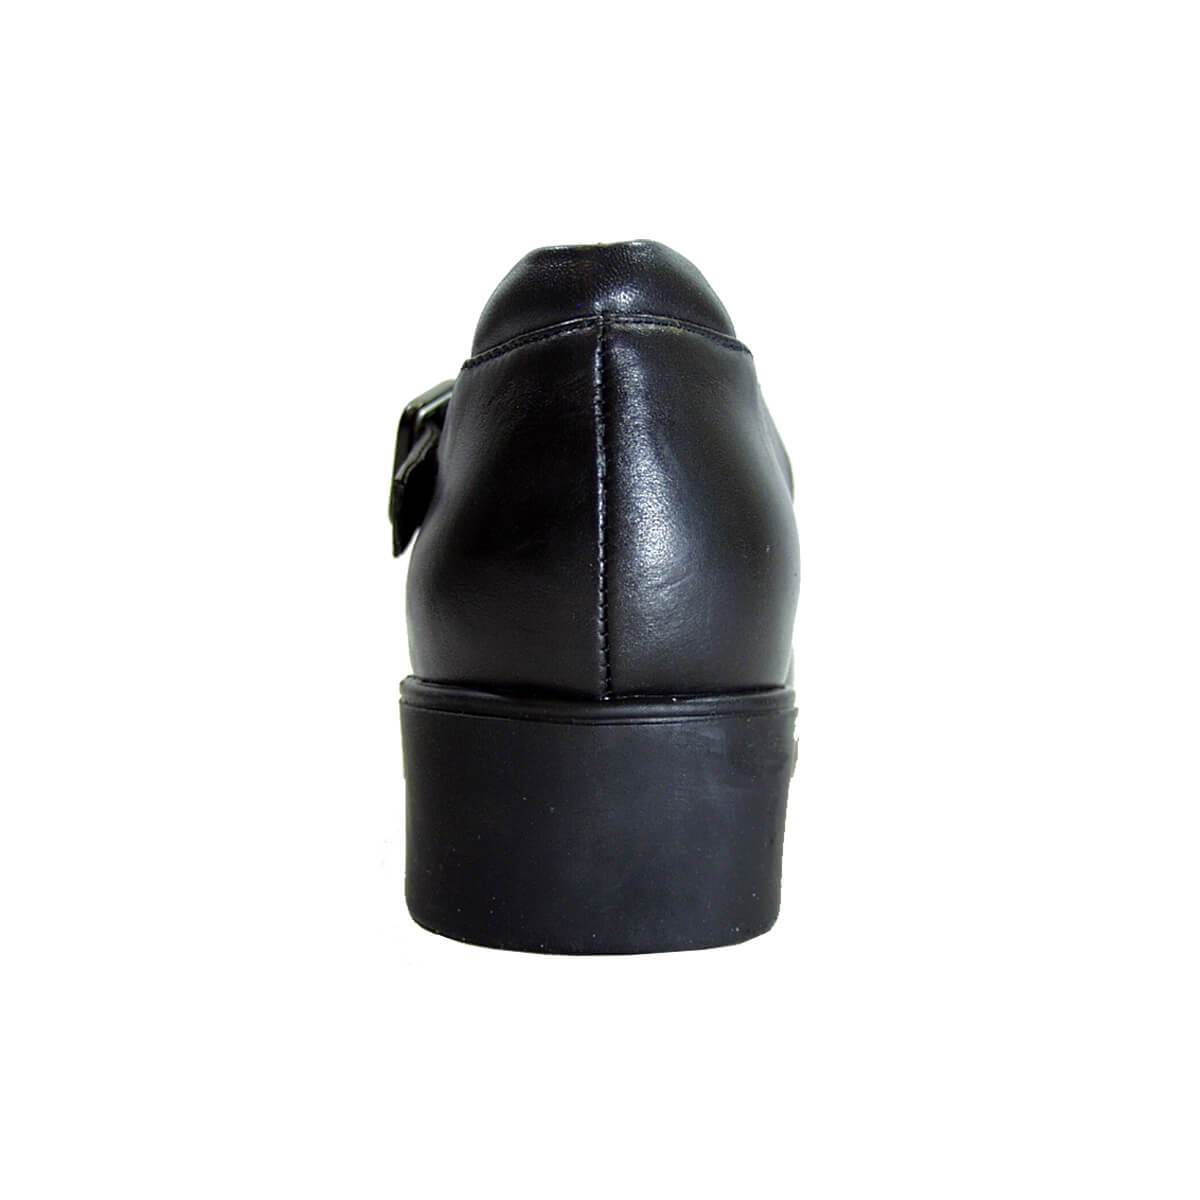 PEERAGE Leda Women's Wide Width Open Shank Leather Shoes